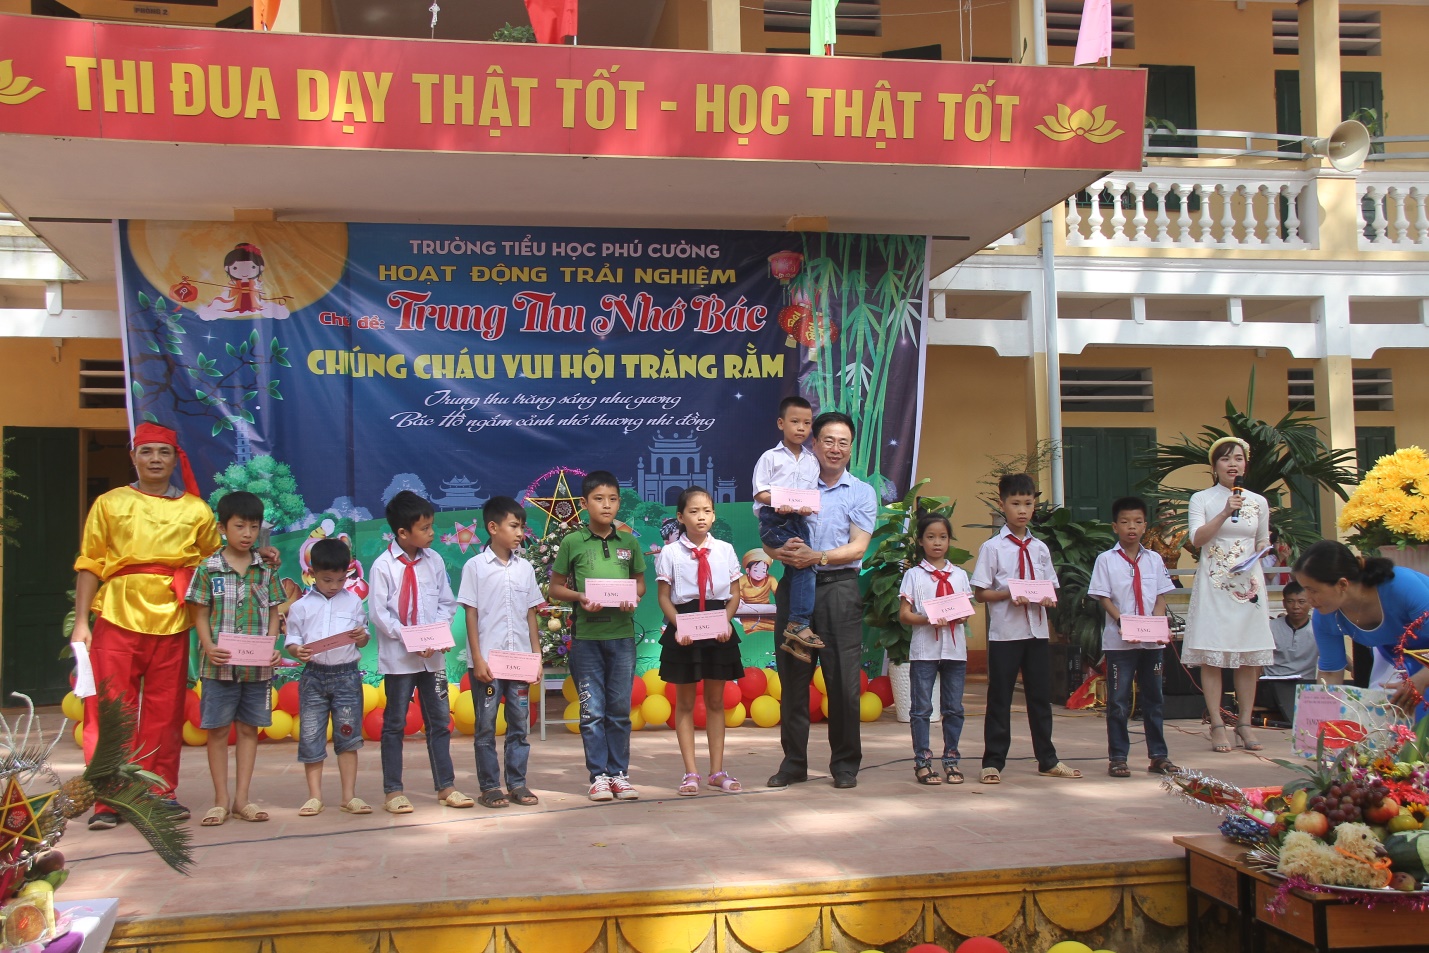 Ông Tạ Hồng Quảng - Ủy viên BTV Tỉnh ủy – Bí thư Thành ủy – vui Tết trung thu cùng các em học sinh trường Tiểu học Phú Cường